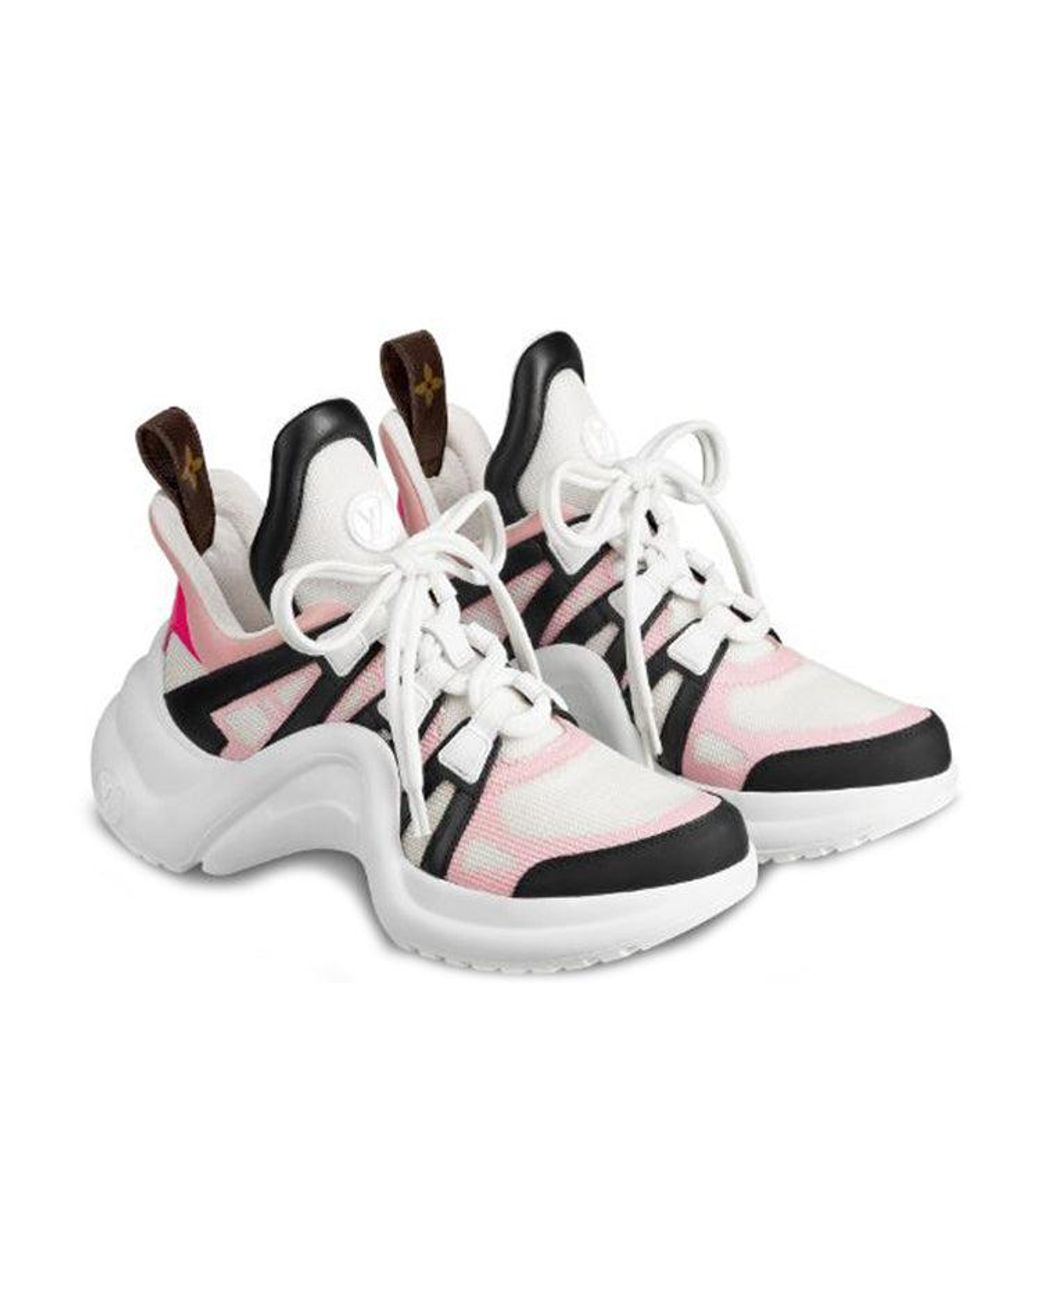 WMNS) LOUIS VUITTON LV ARCHLIGHT Sports Shoes Blue/White/Pink